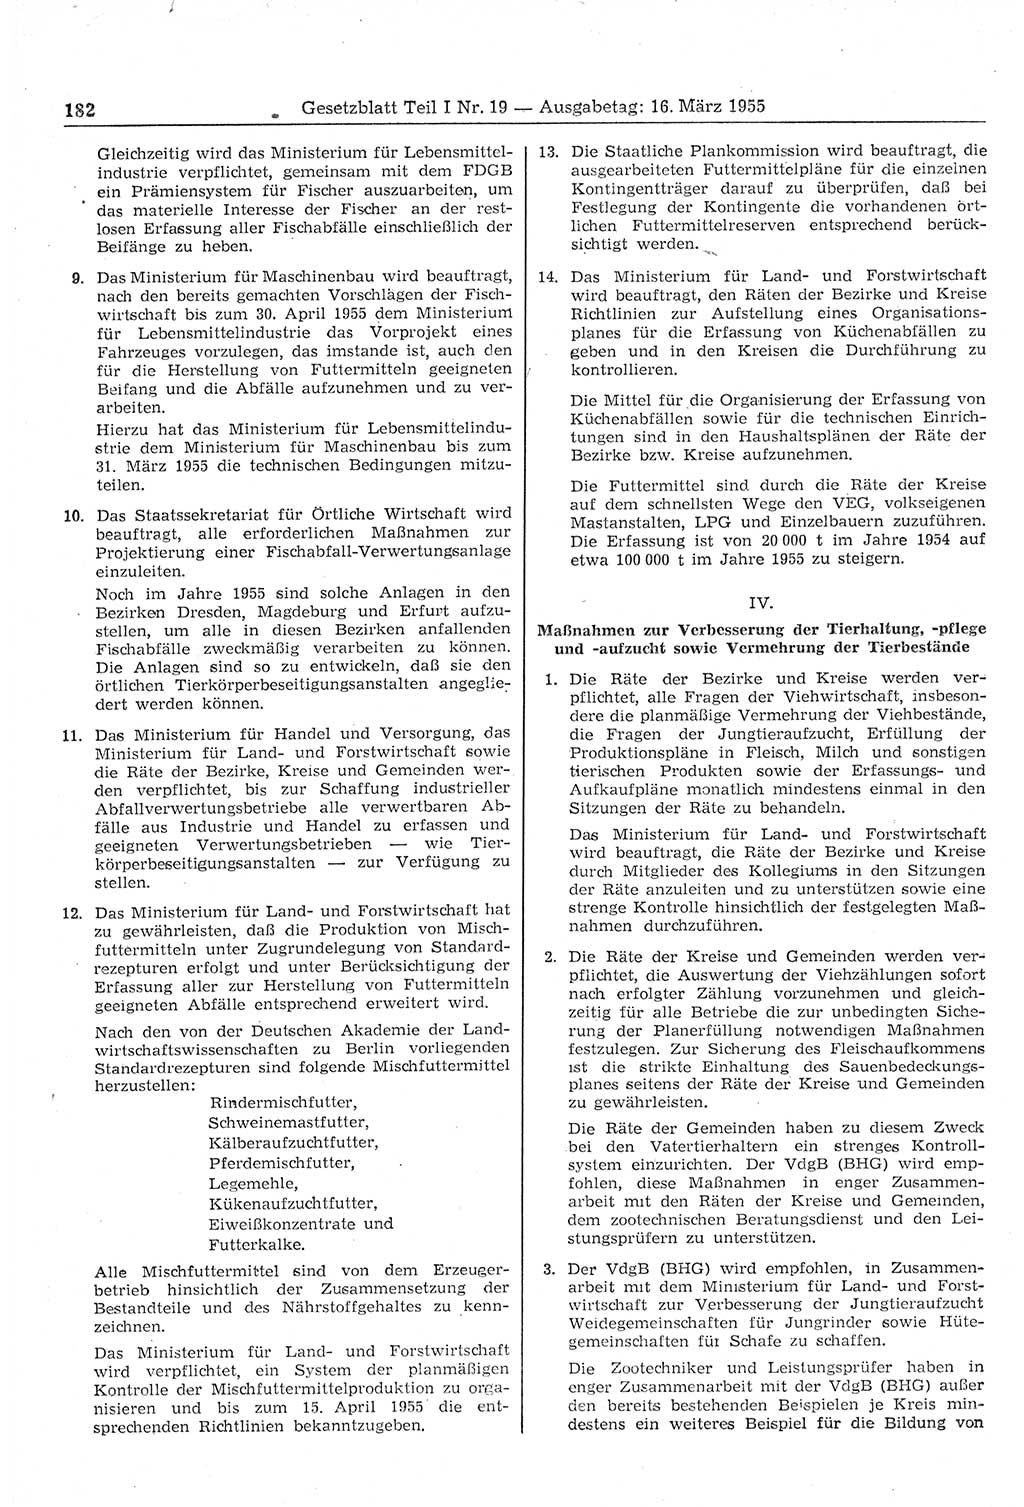 Gesetzblatt (GBl.) der Deutschen Demokratischen Republik (DDR) Teil Ⅰ 1955, Seite 182 (GBl. DDR Ⅰ 1955, S. 182)